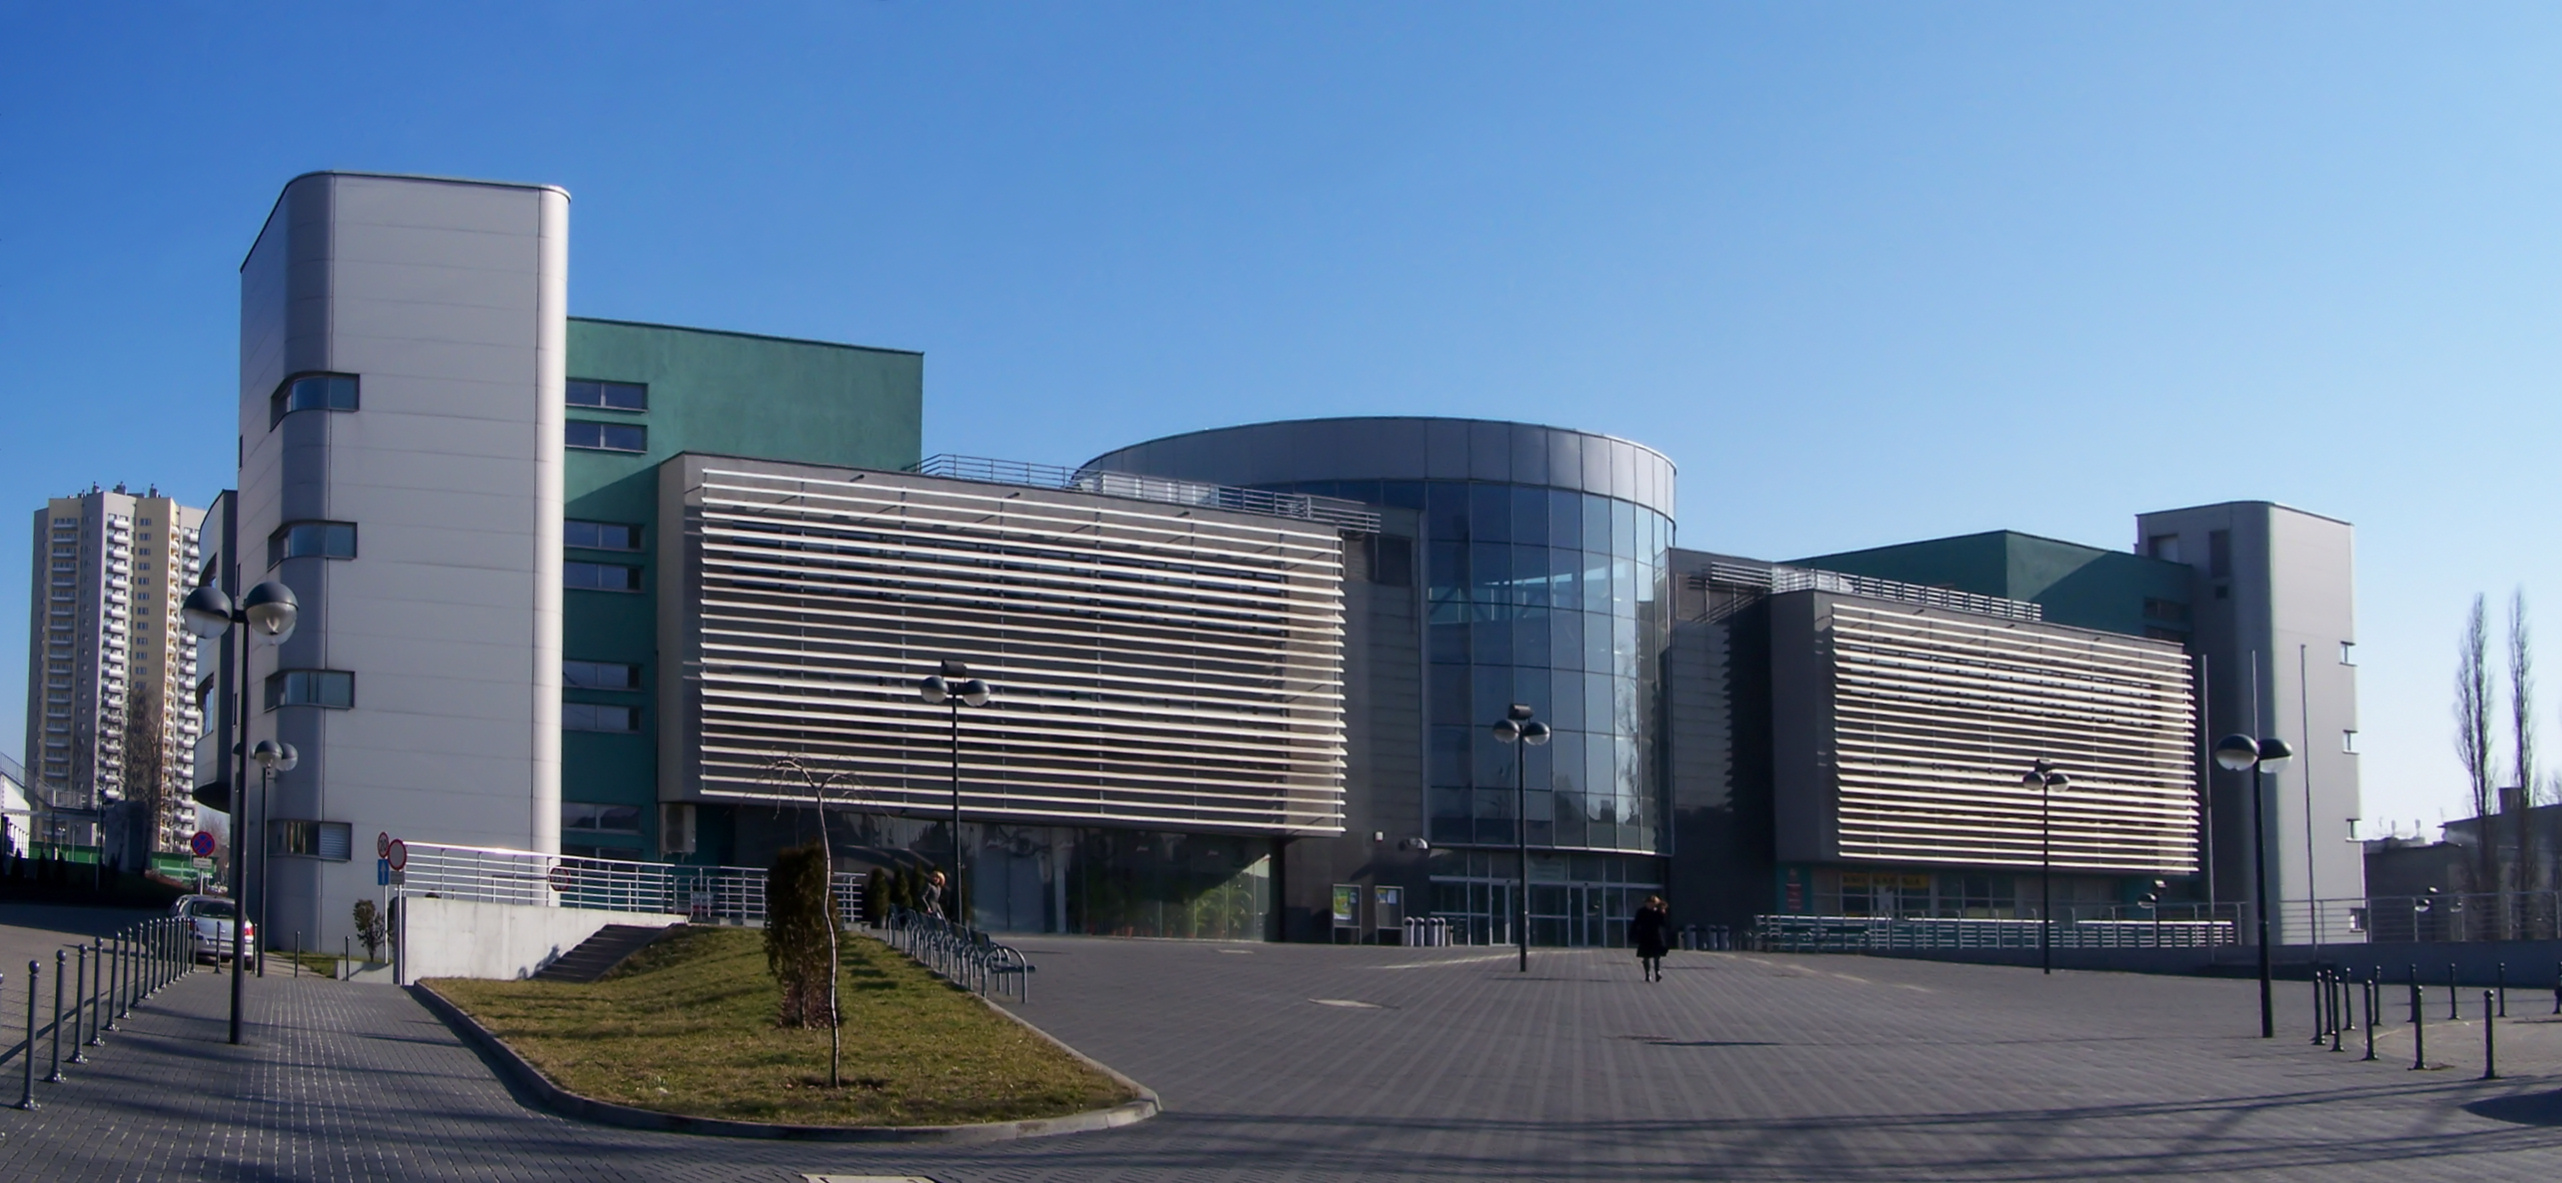 Katowice university